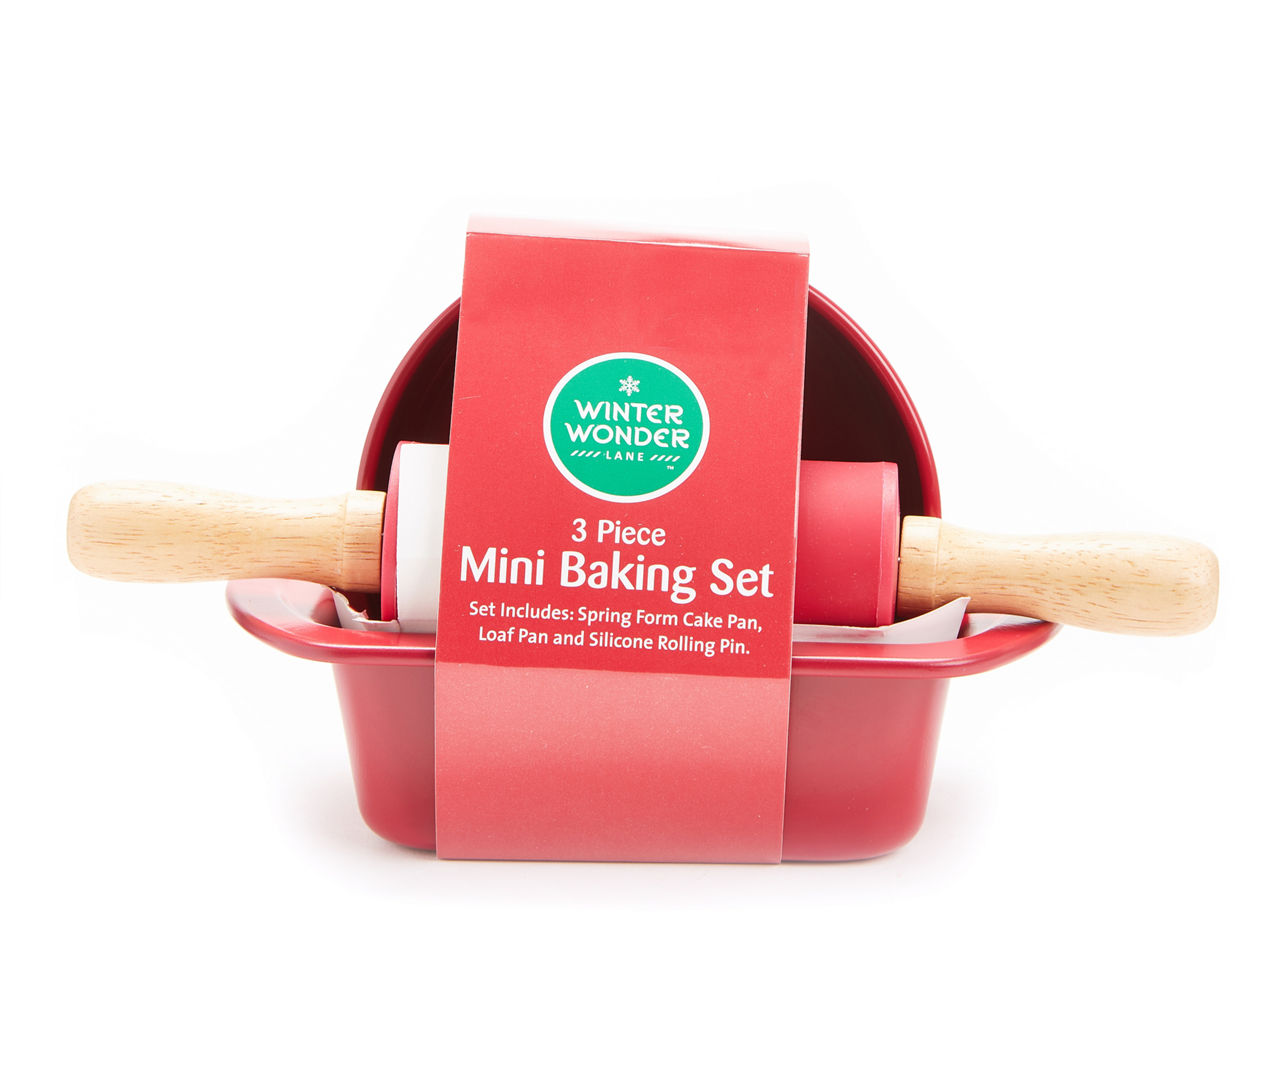 Winter Wonder Lane Red 3-Piece Mini Baking Set